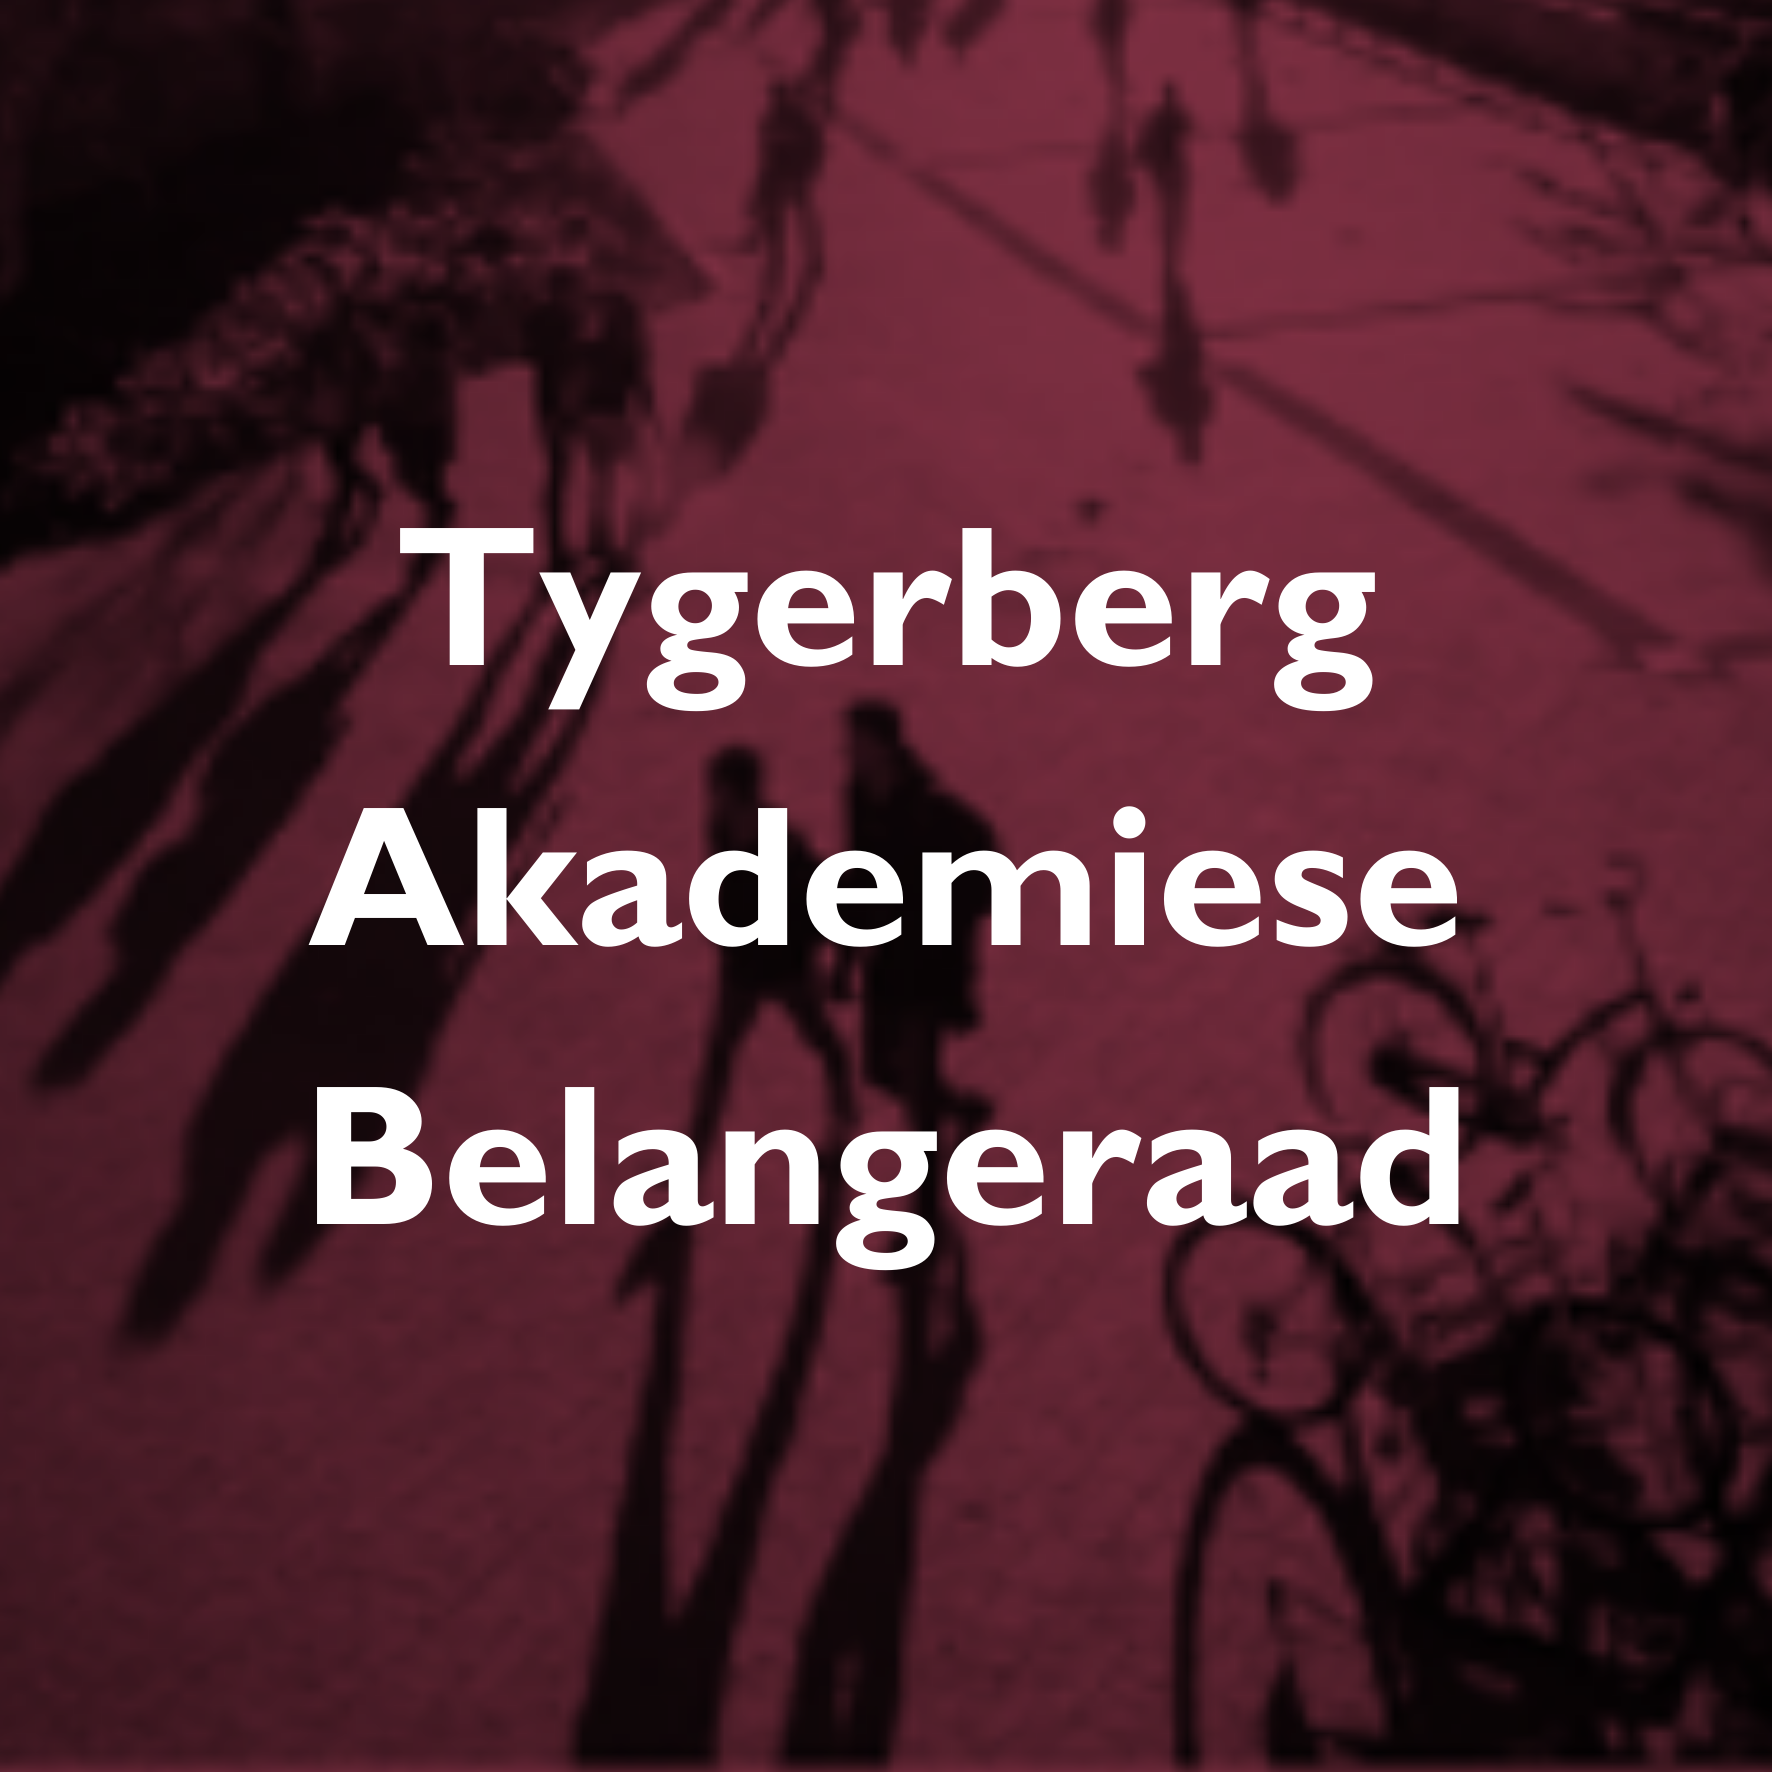 Tygerberg Academic Affairs Council - OSG.png